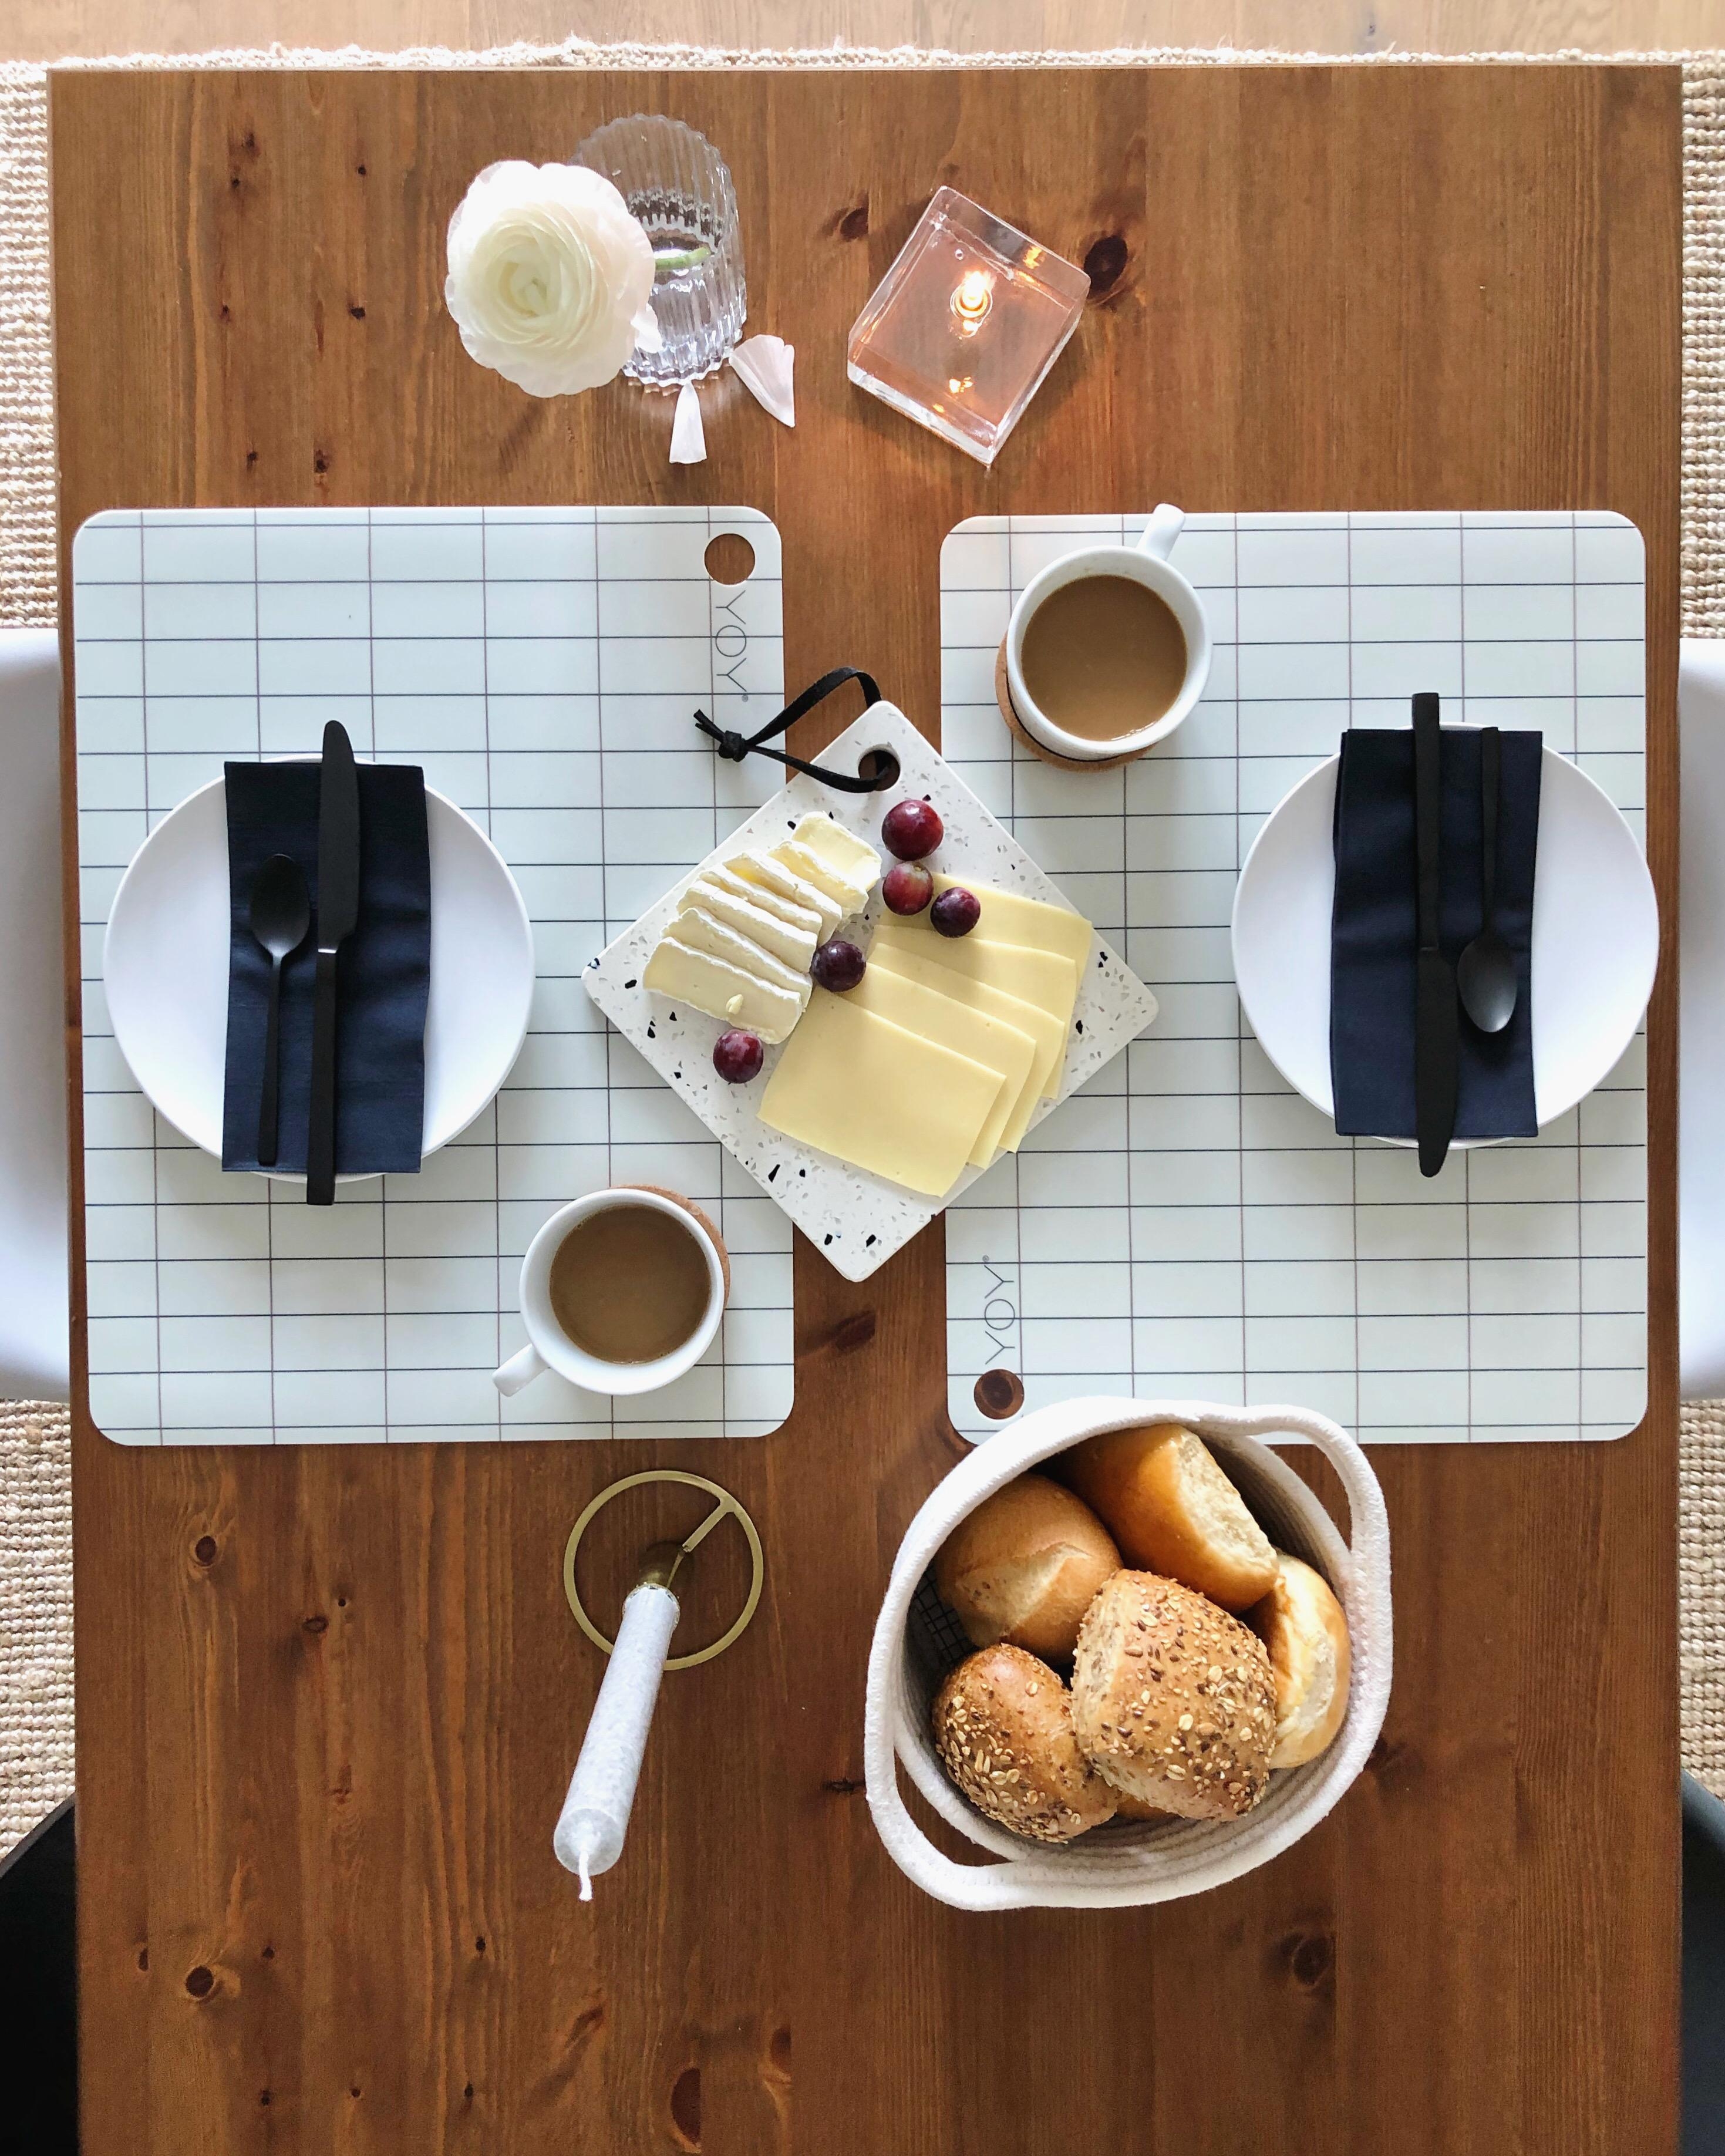 spätes Frühstück ☕️
#kitchen #küche #tischdeko #Dinningroom #home #tableware #couchstyle